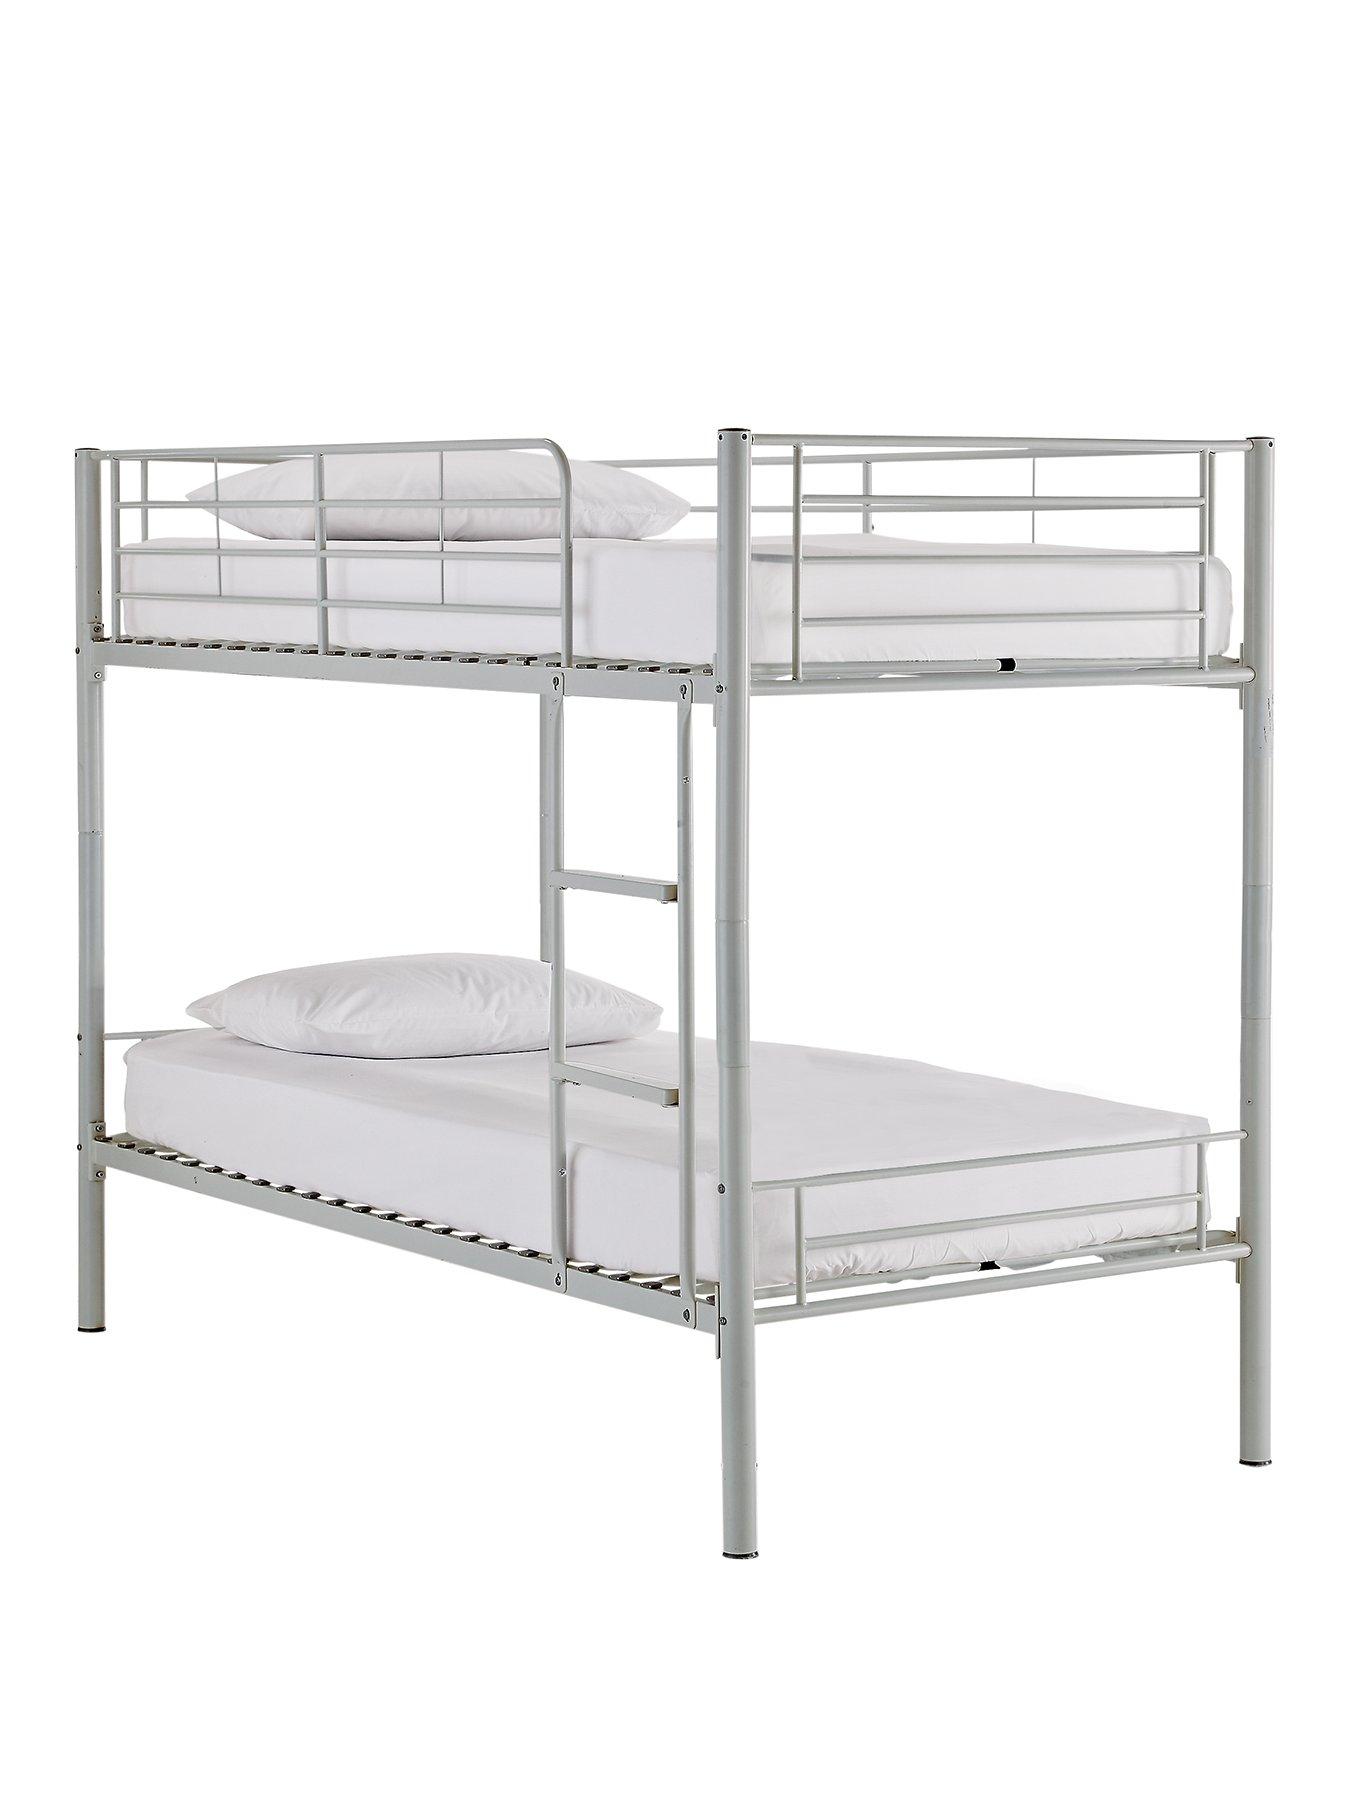 metal bunk beds